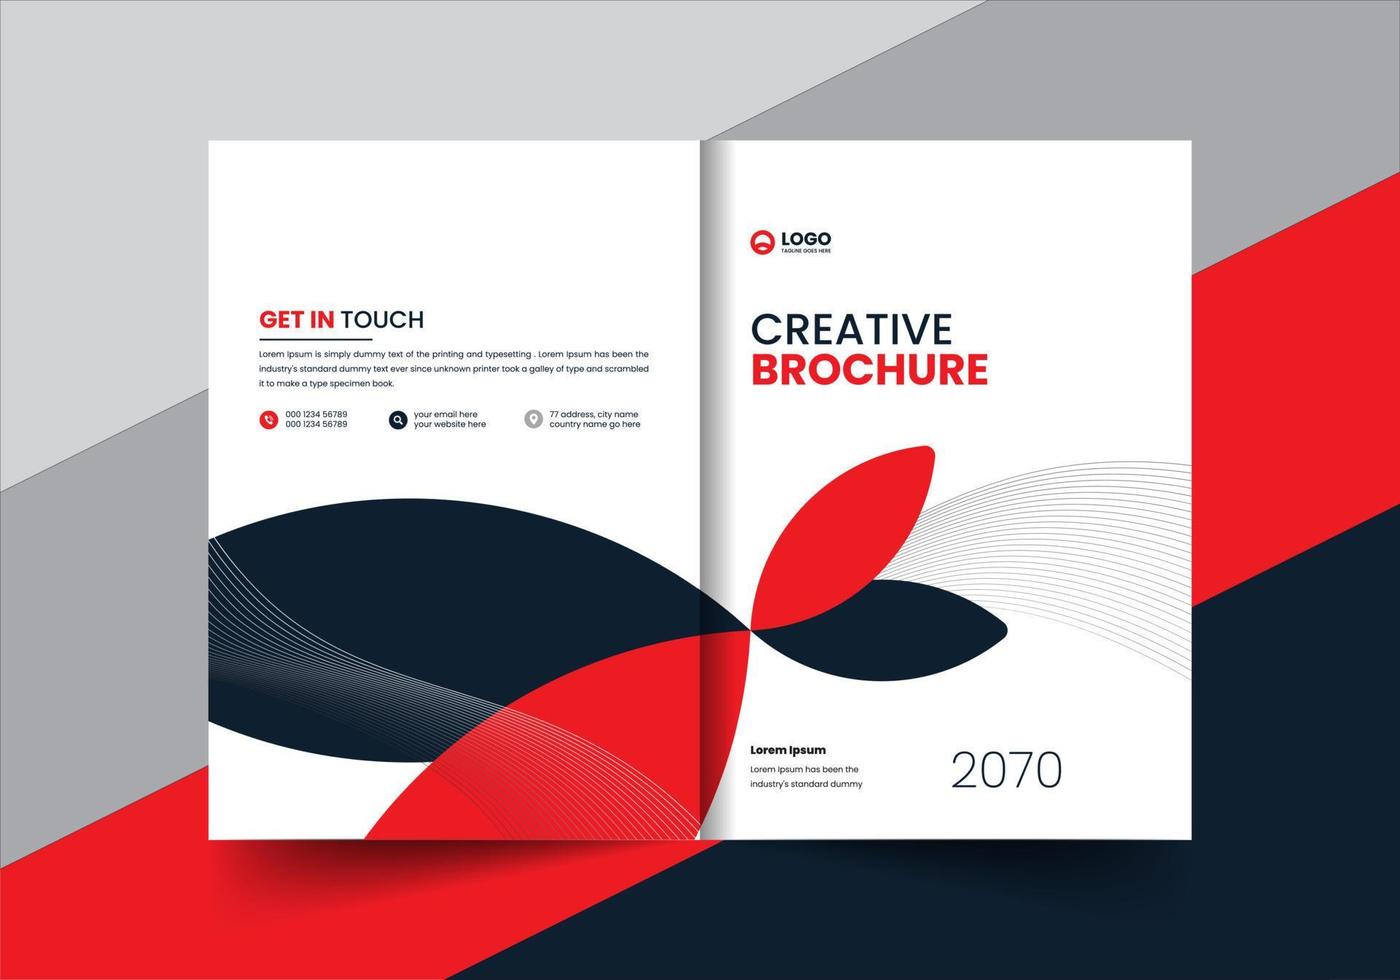 profilo aziendale opuscolo relazione annuale opuscolo proposta copertina layout concept design vettore